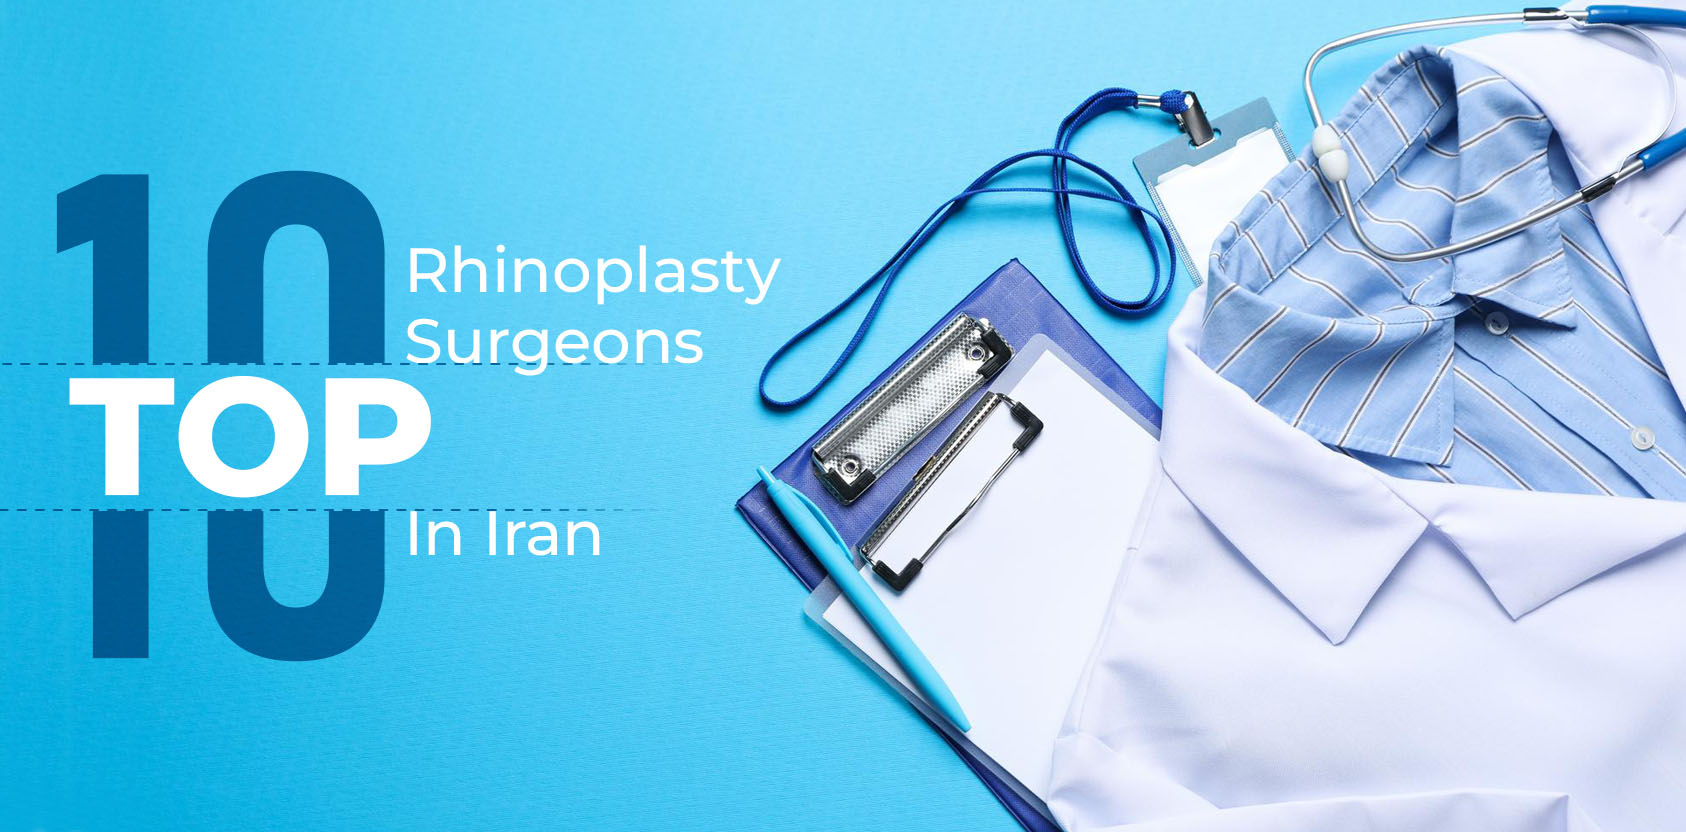 Best rhinoplasty surgeon in Iran